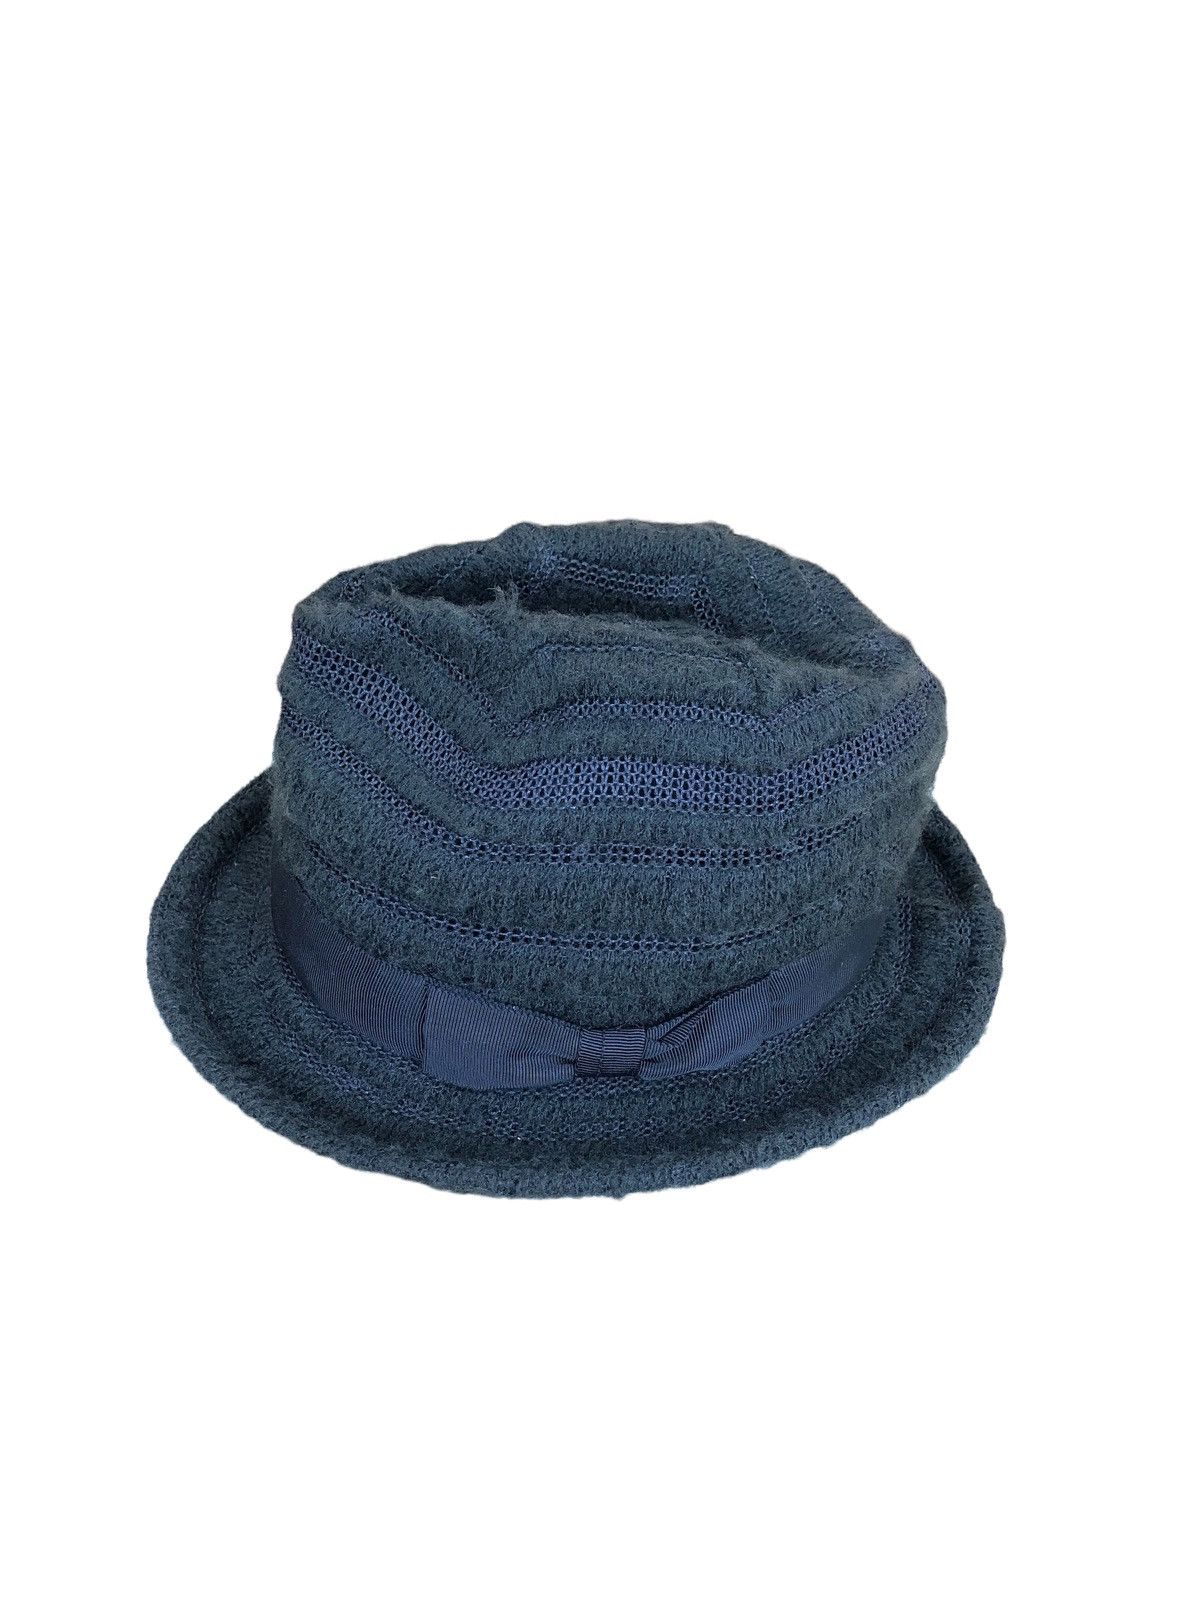 Ca4la - Bucket Hats - 2